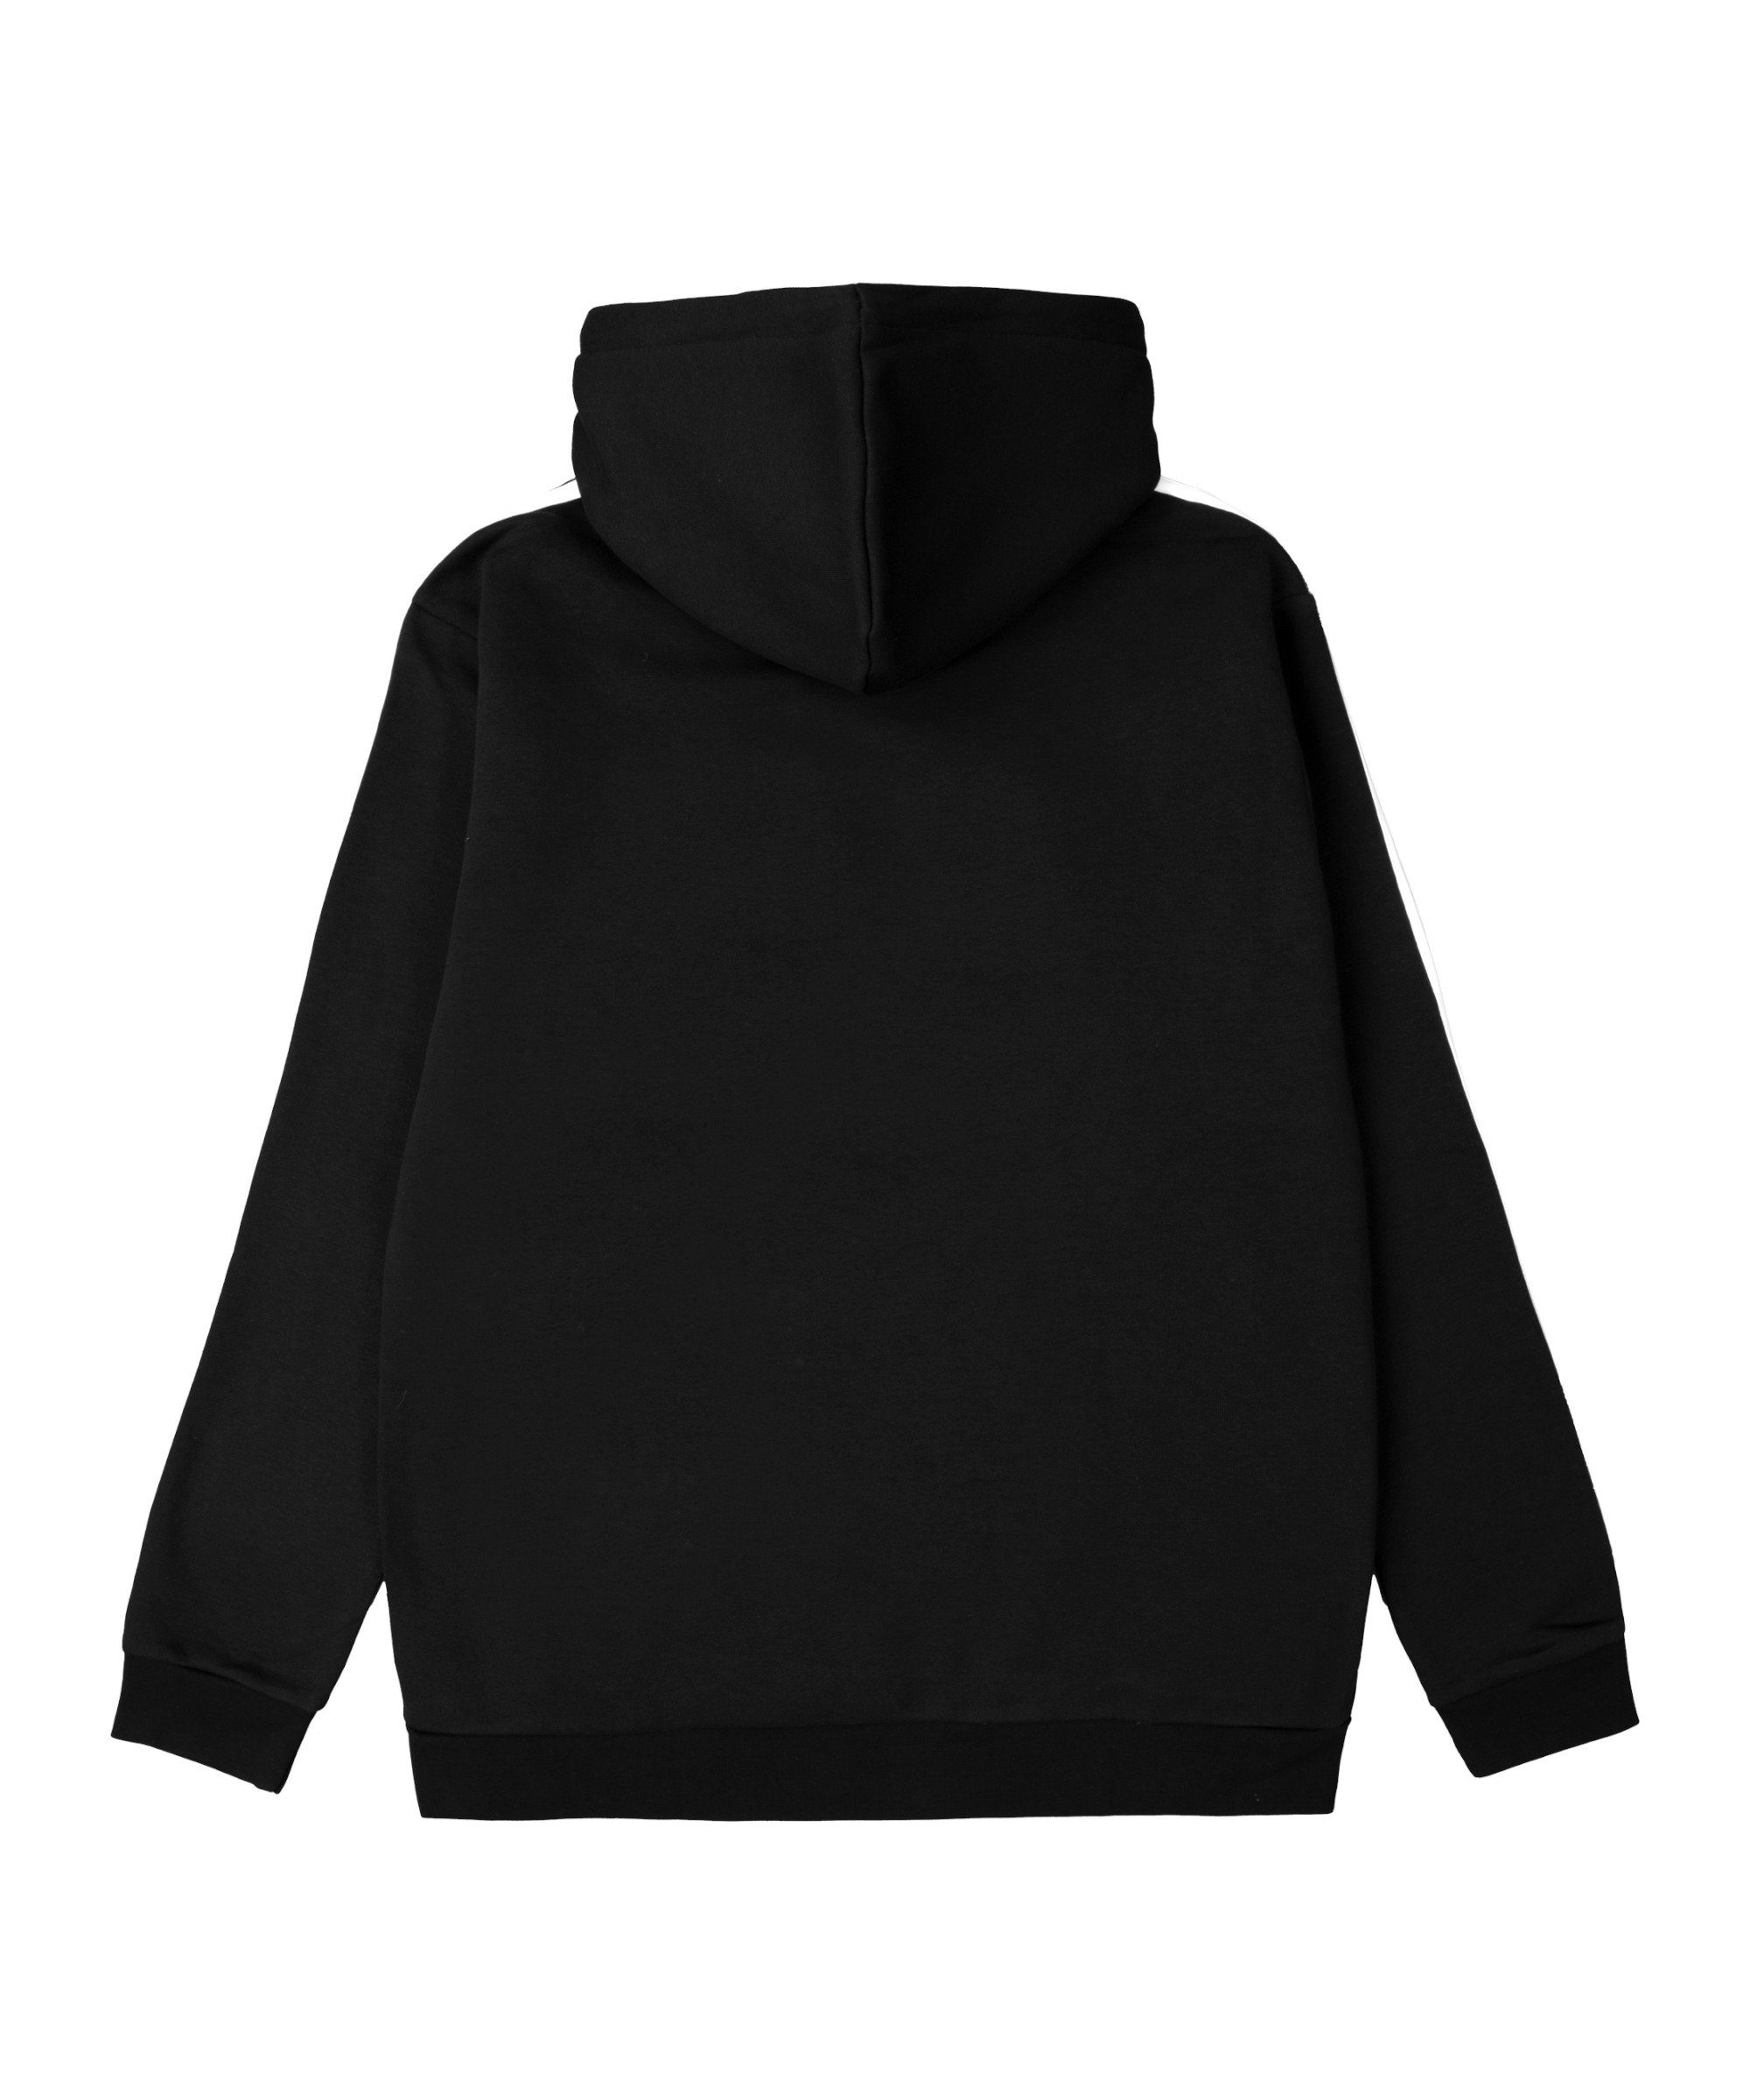 adidas Originals 3S schwarz Hoody Sweatshirt